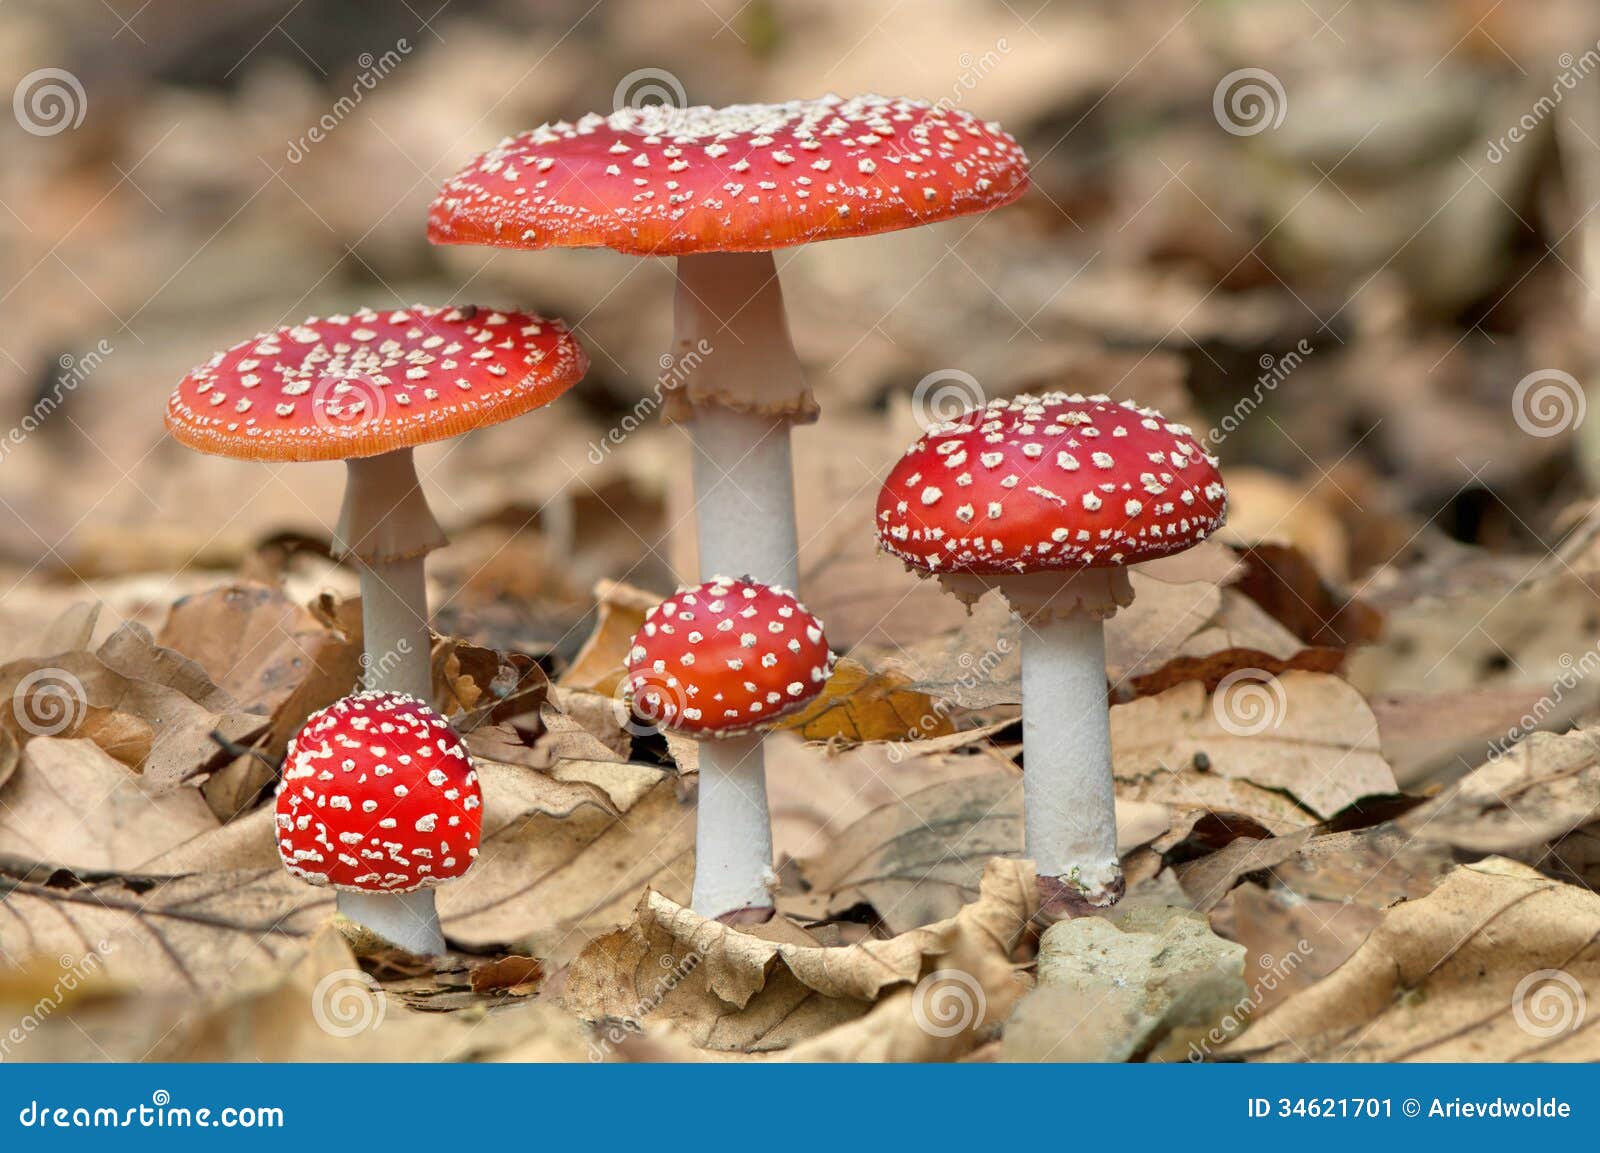 five red mushrooms fungi